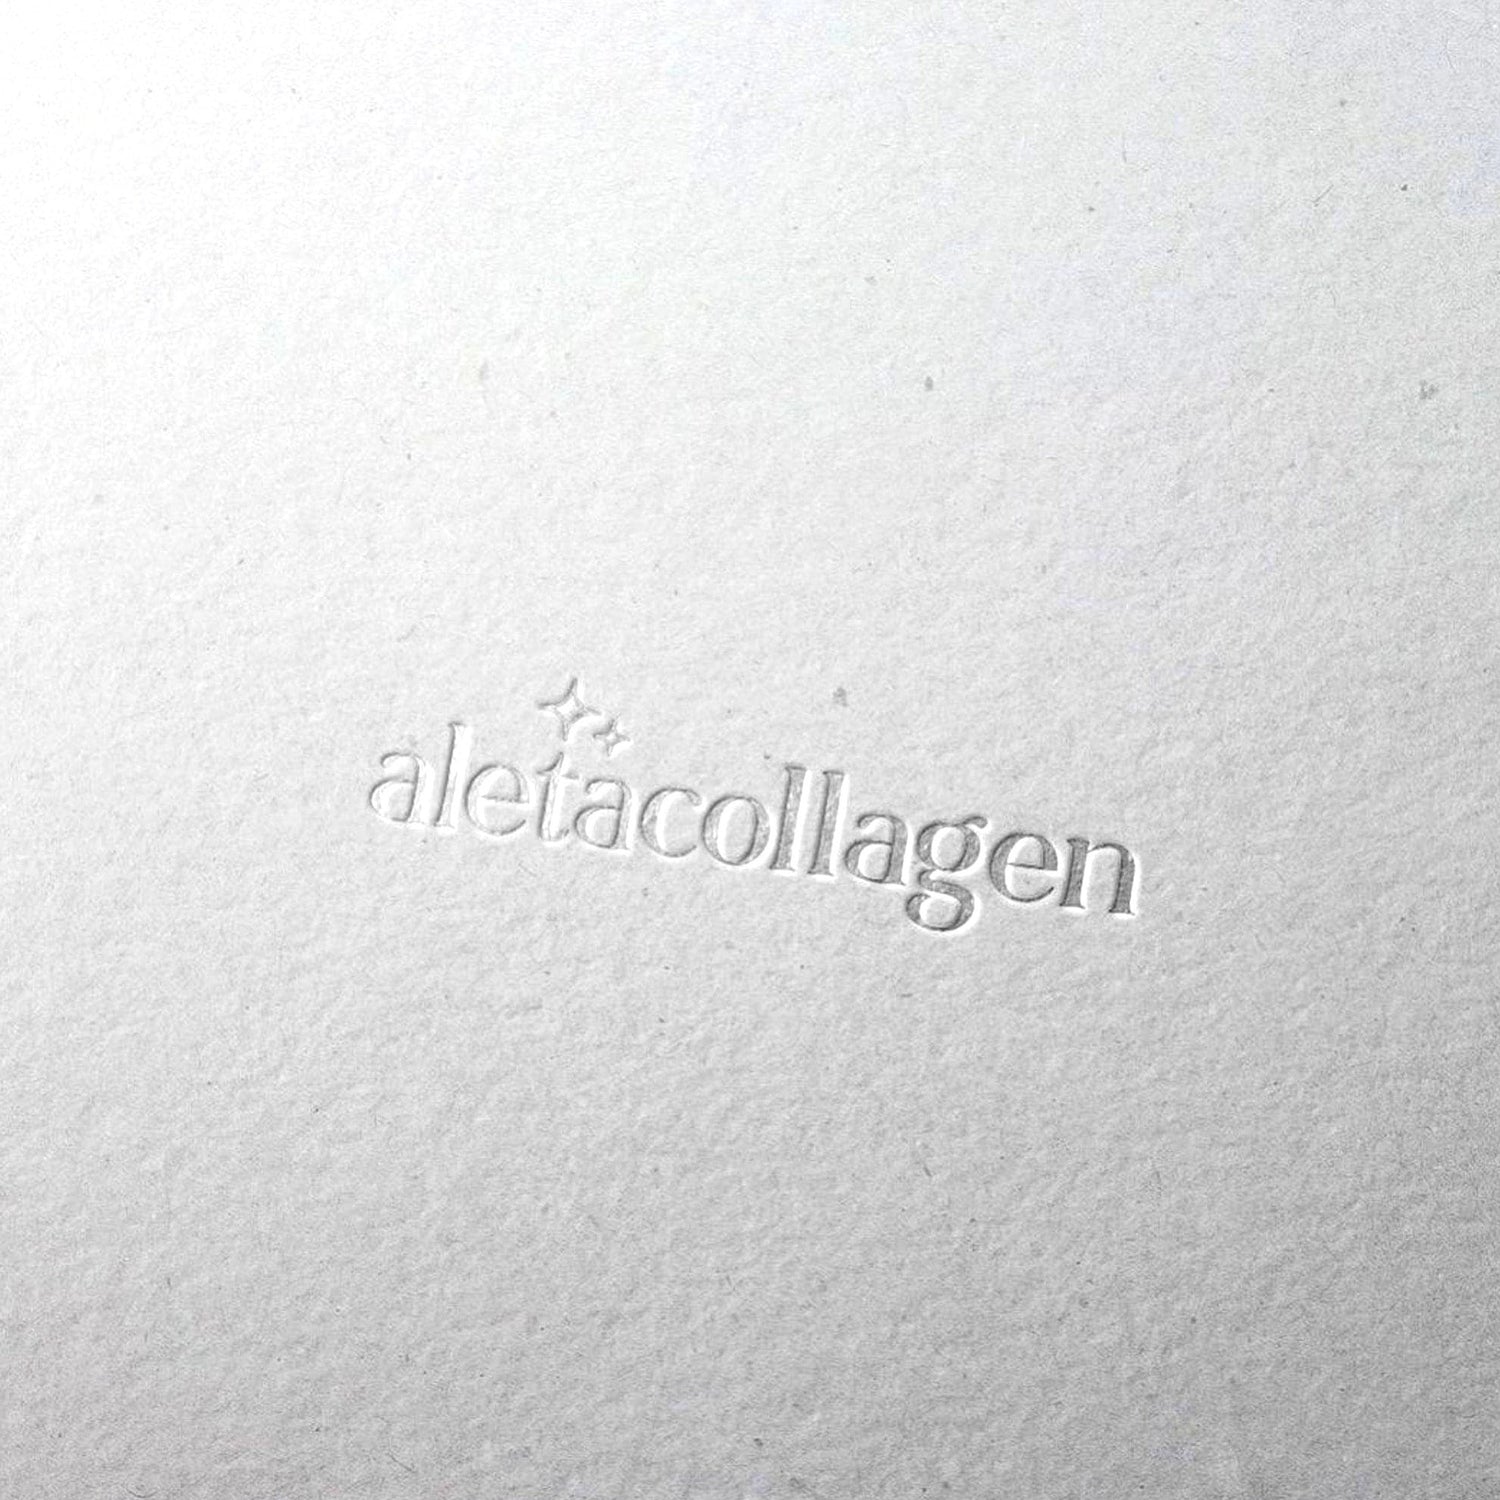 Aleta Collagen Logo